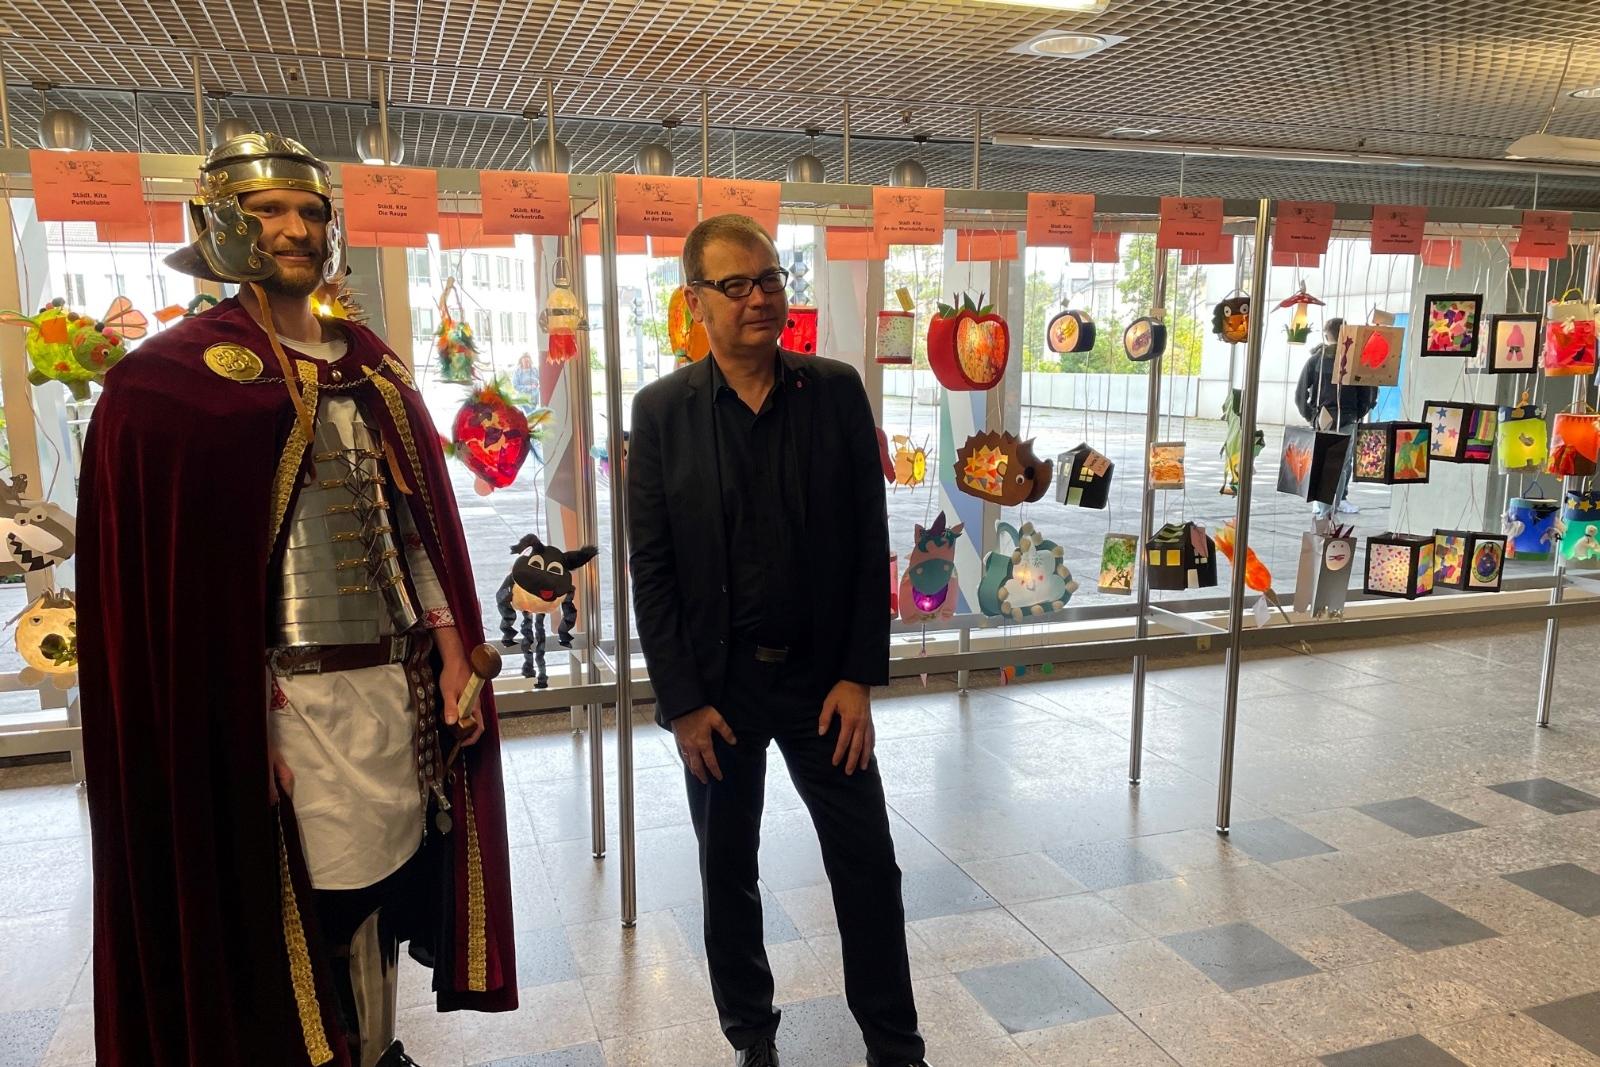 Martinsdarsteller Felix Holtkamp und Bezirksbürgermeister Jochen Reeh-Schall im Foyer des Stadthauses bei der Eröffnung